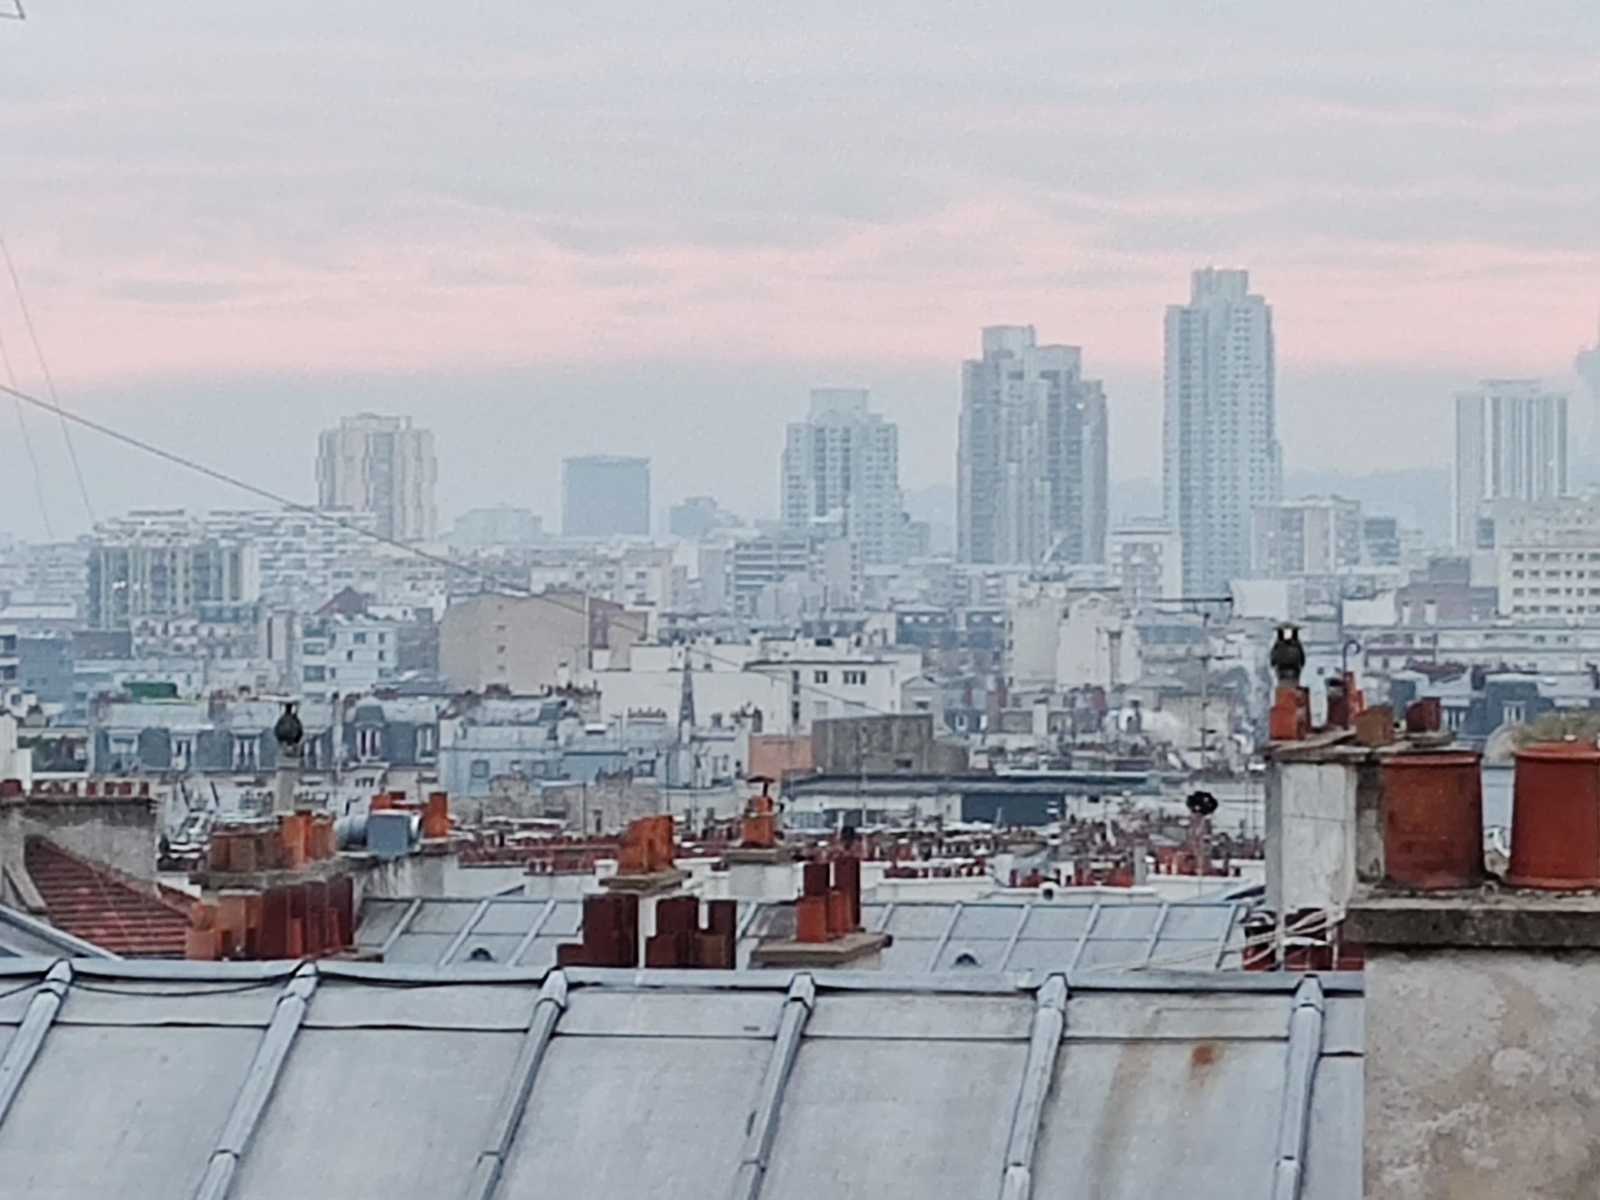 Sicht über Häuserdächer Paris Montmartre Sacre Coeur Miethaie Marchands de sommeils. Smog am Horizont